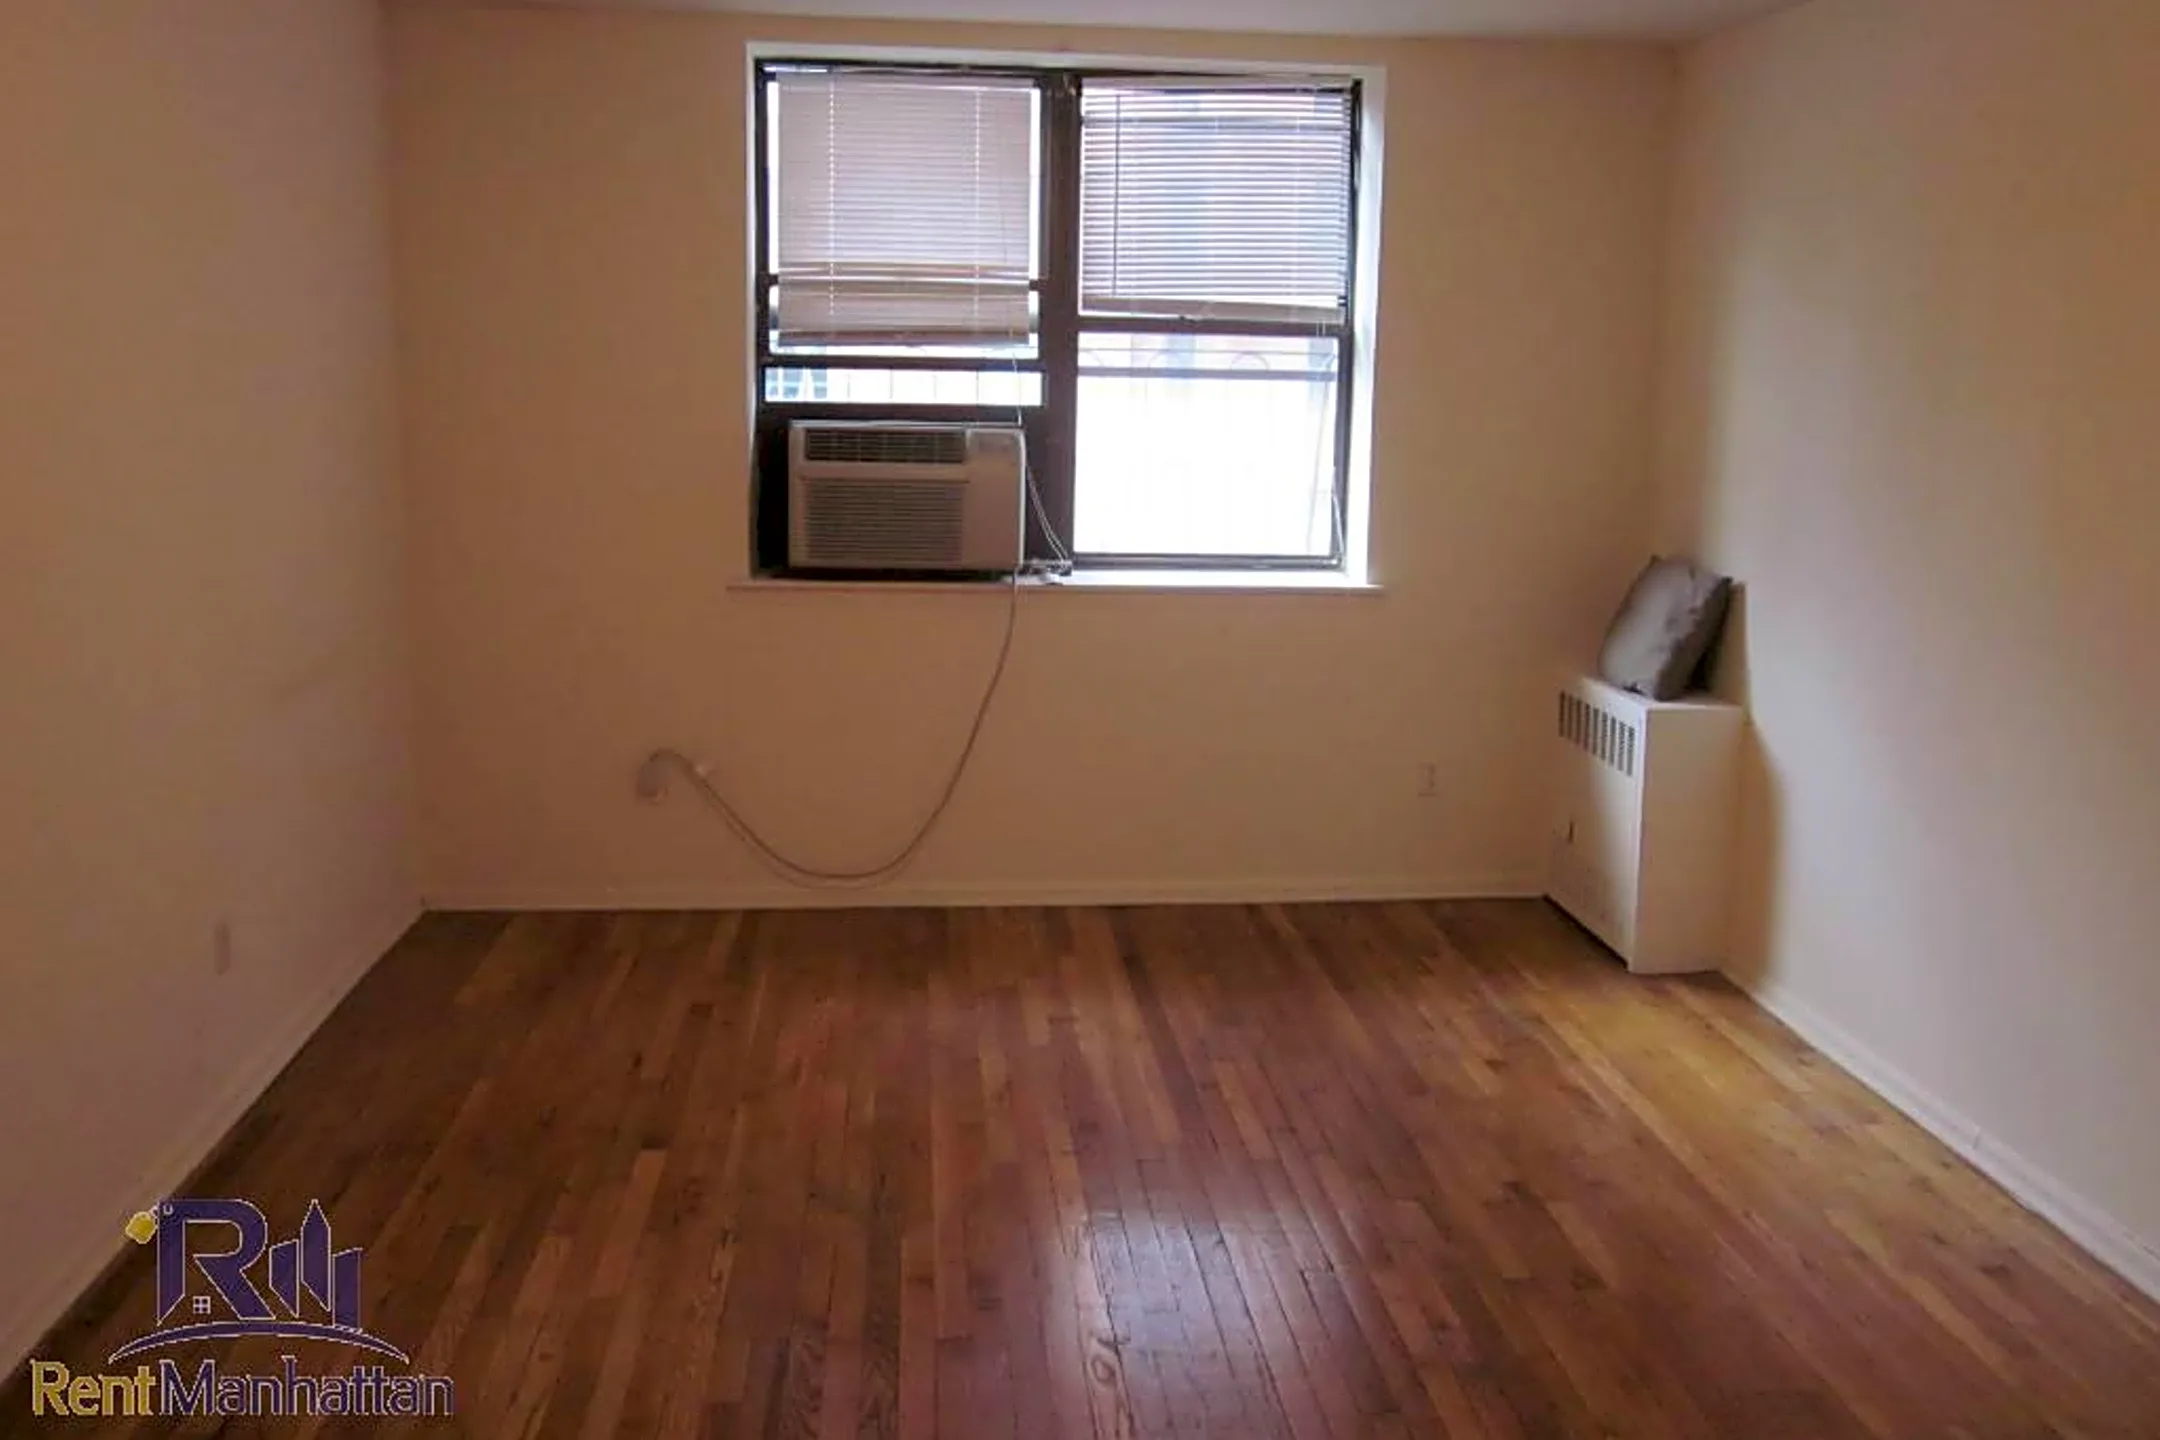 Bedroom - 1729 1st Ave. - New York, NY